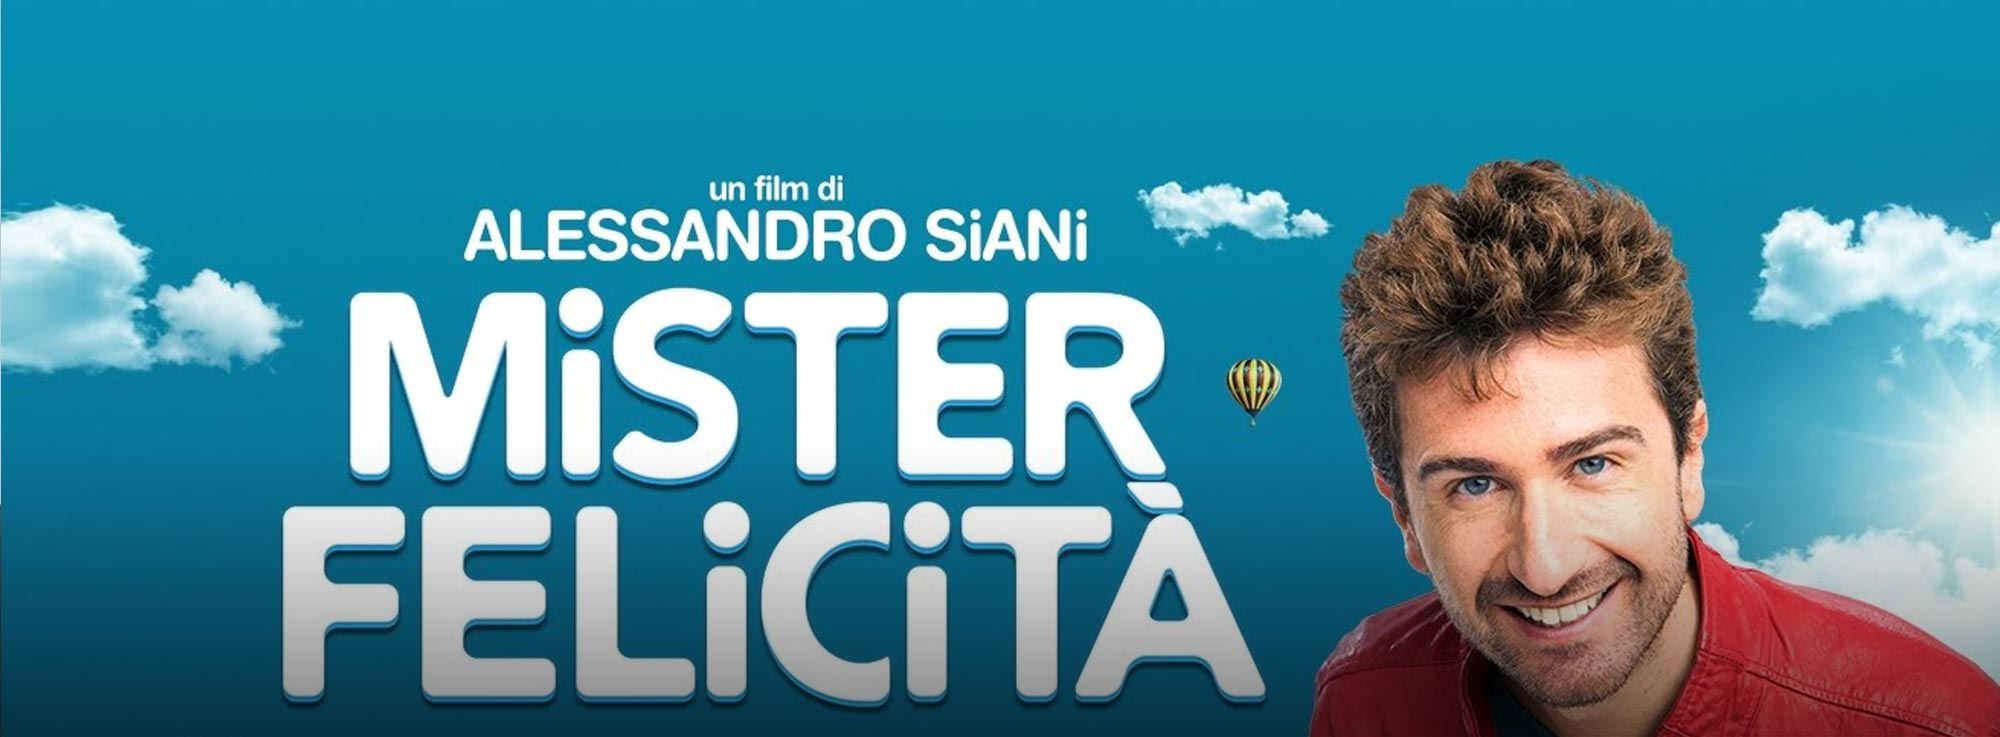 Andria: Alessandro Siani presenta Mister Felicità